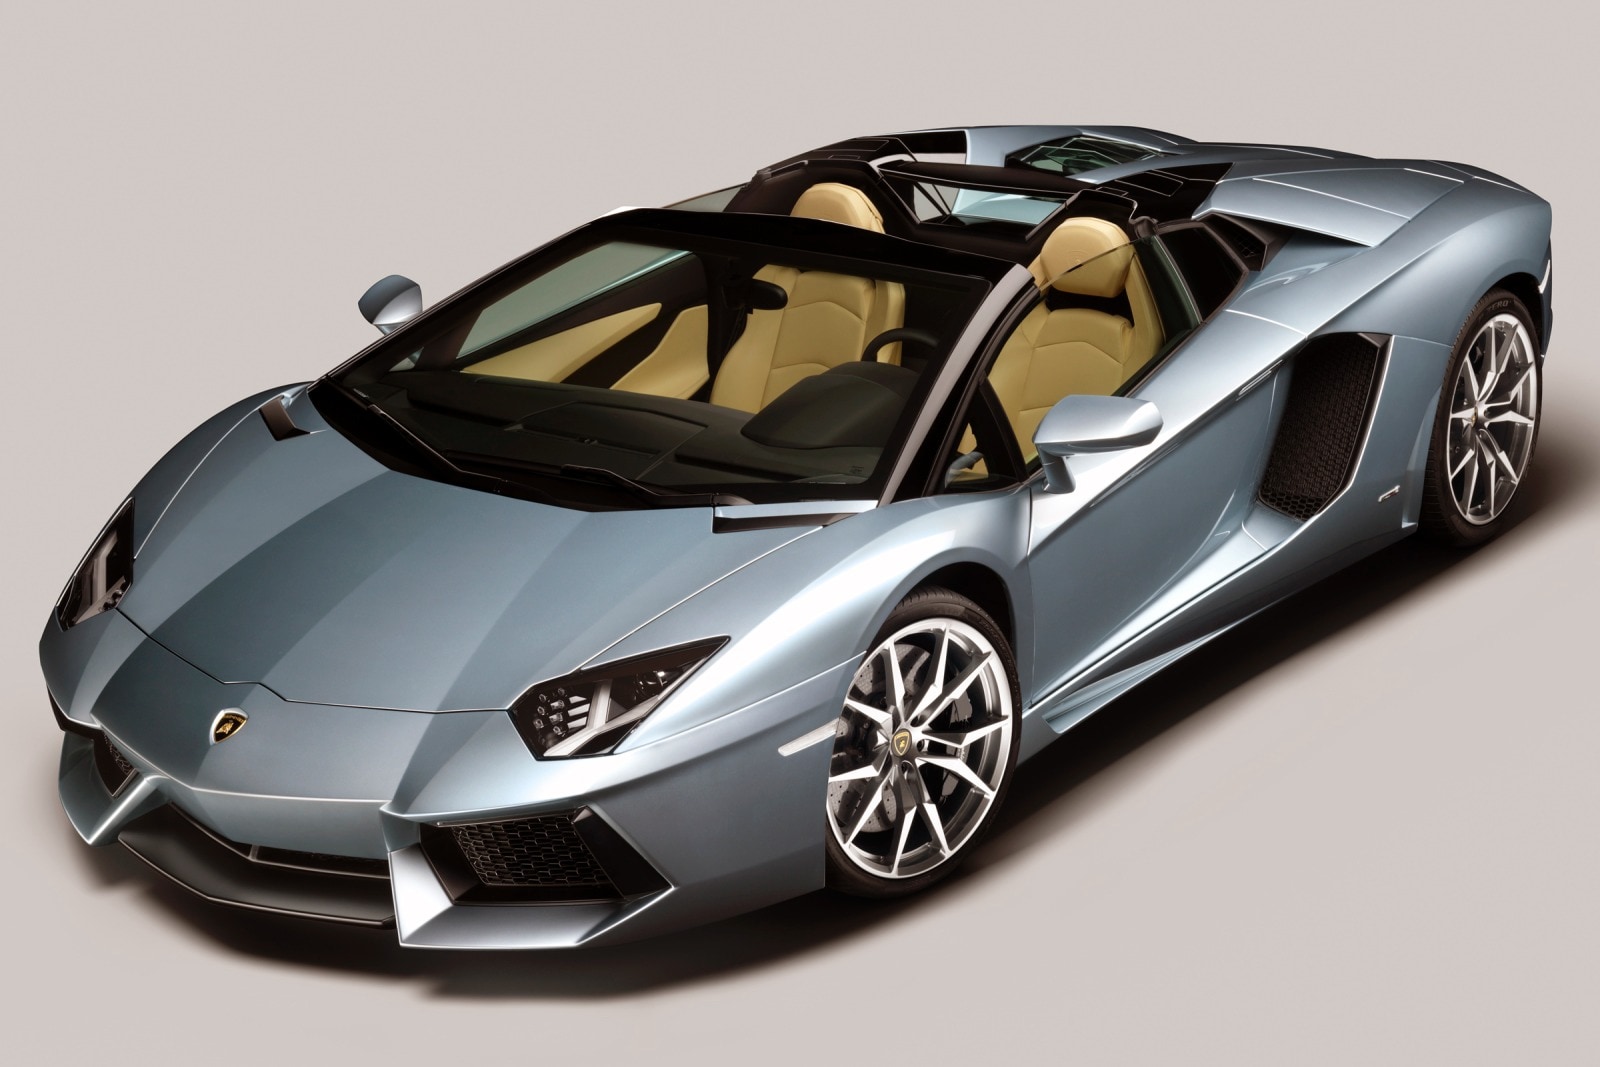 2014 Lamborghini Aventador Review & Ratings | Edmunds